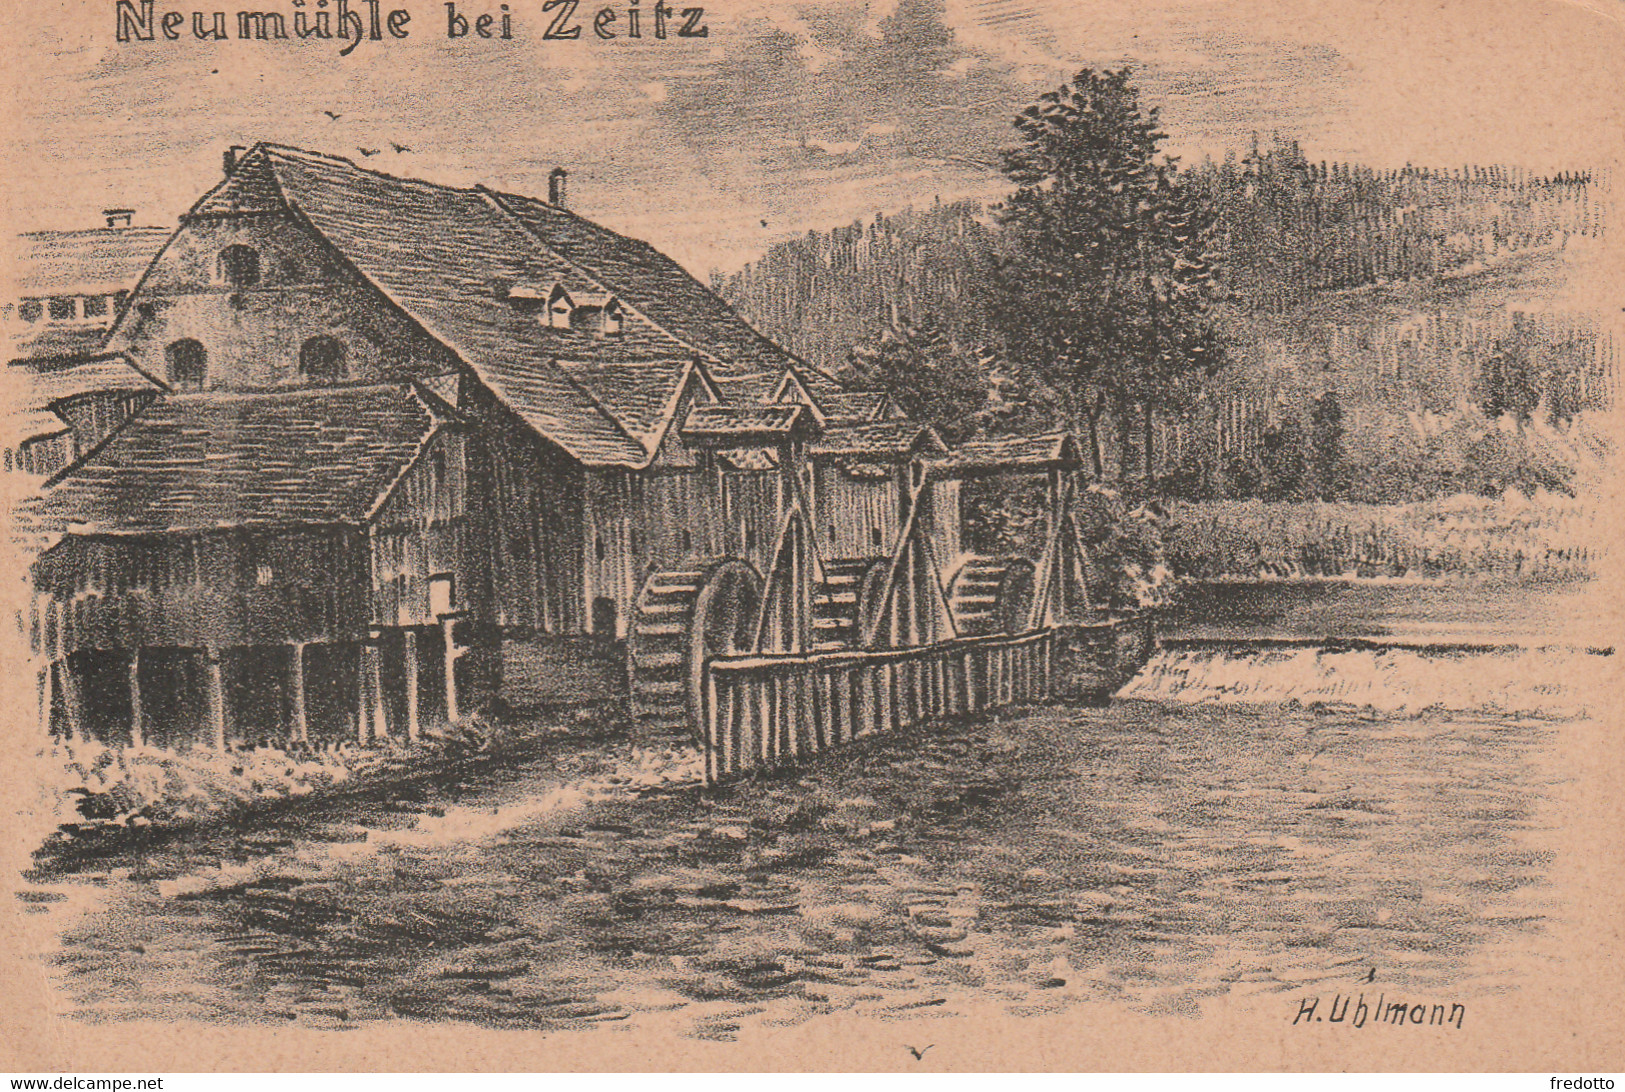 Neumühle Bei Zeitz--Künstler-Litho Signiert H.Uhlmann-Karte Beschriftet 1912 - Zeitz